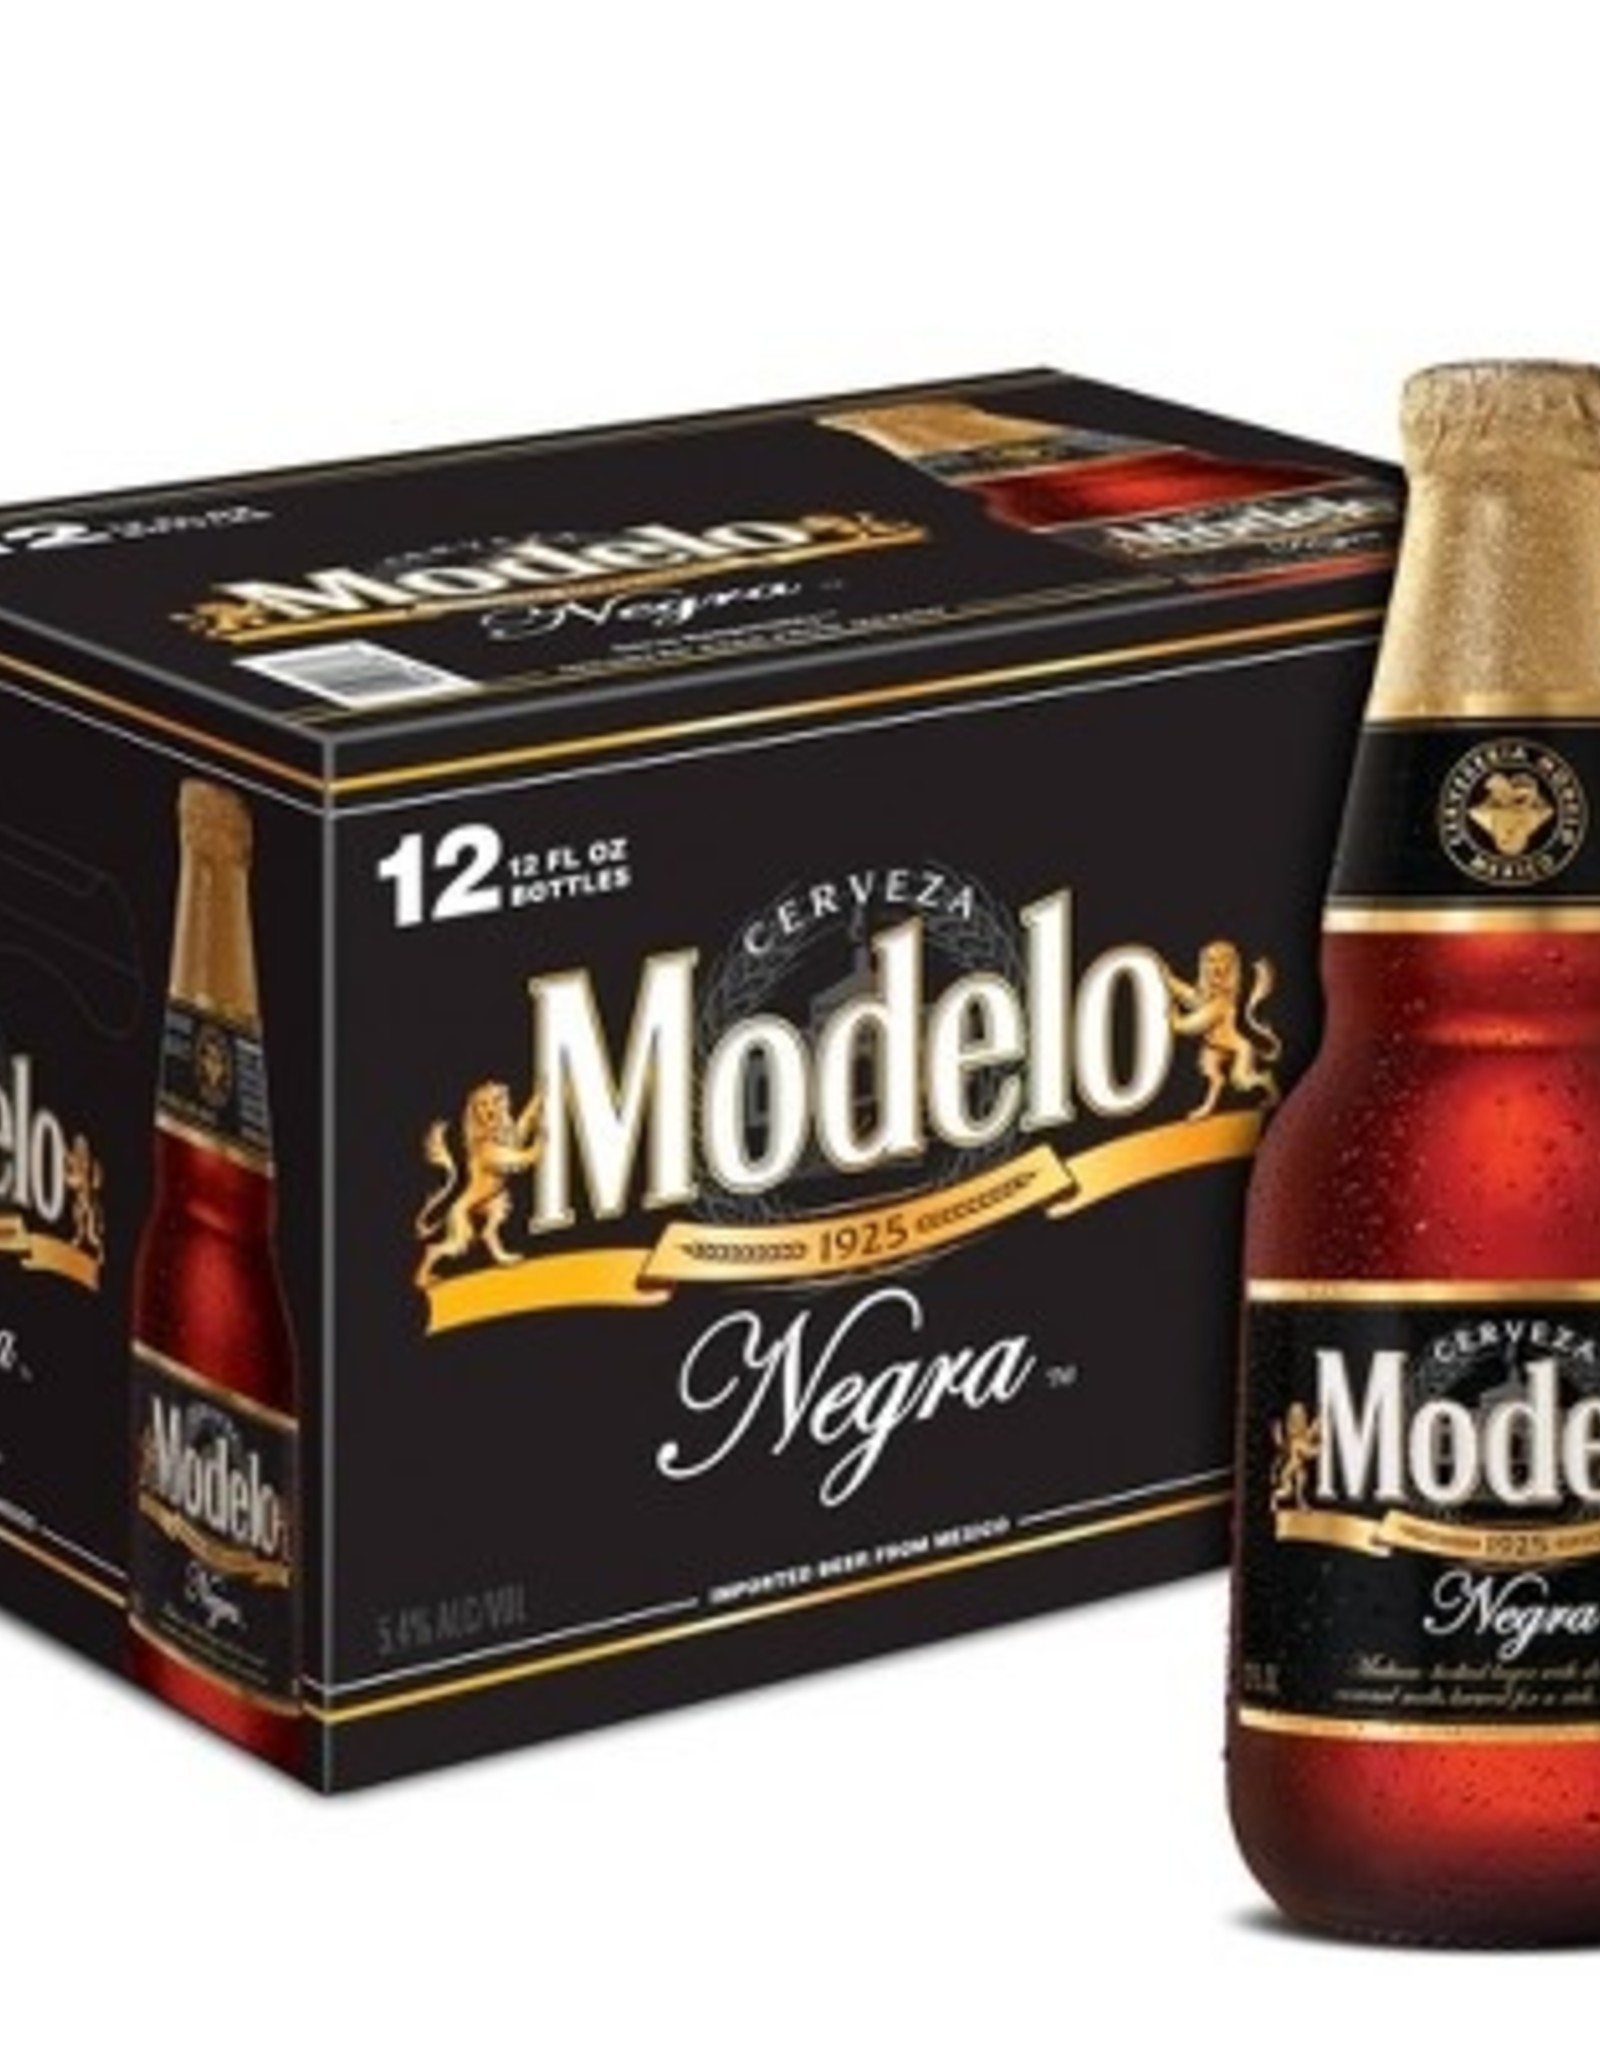 Modelo Negra 6x12 oz bottles